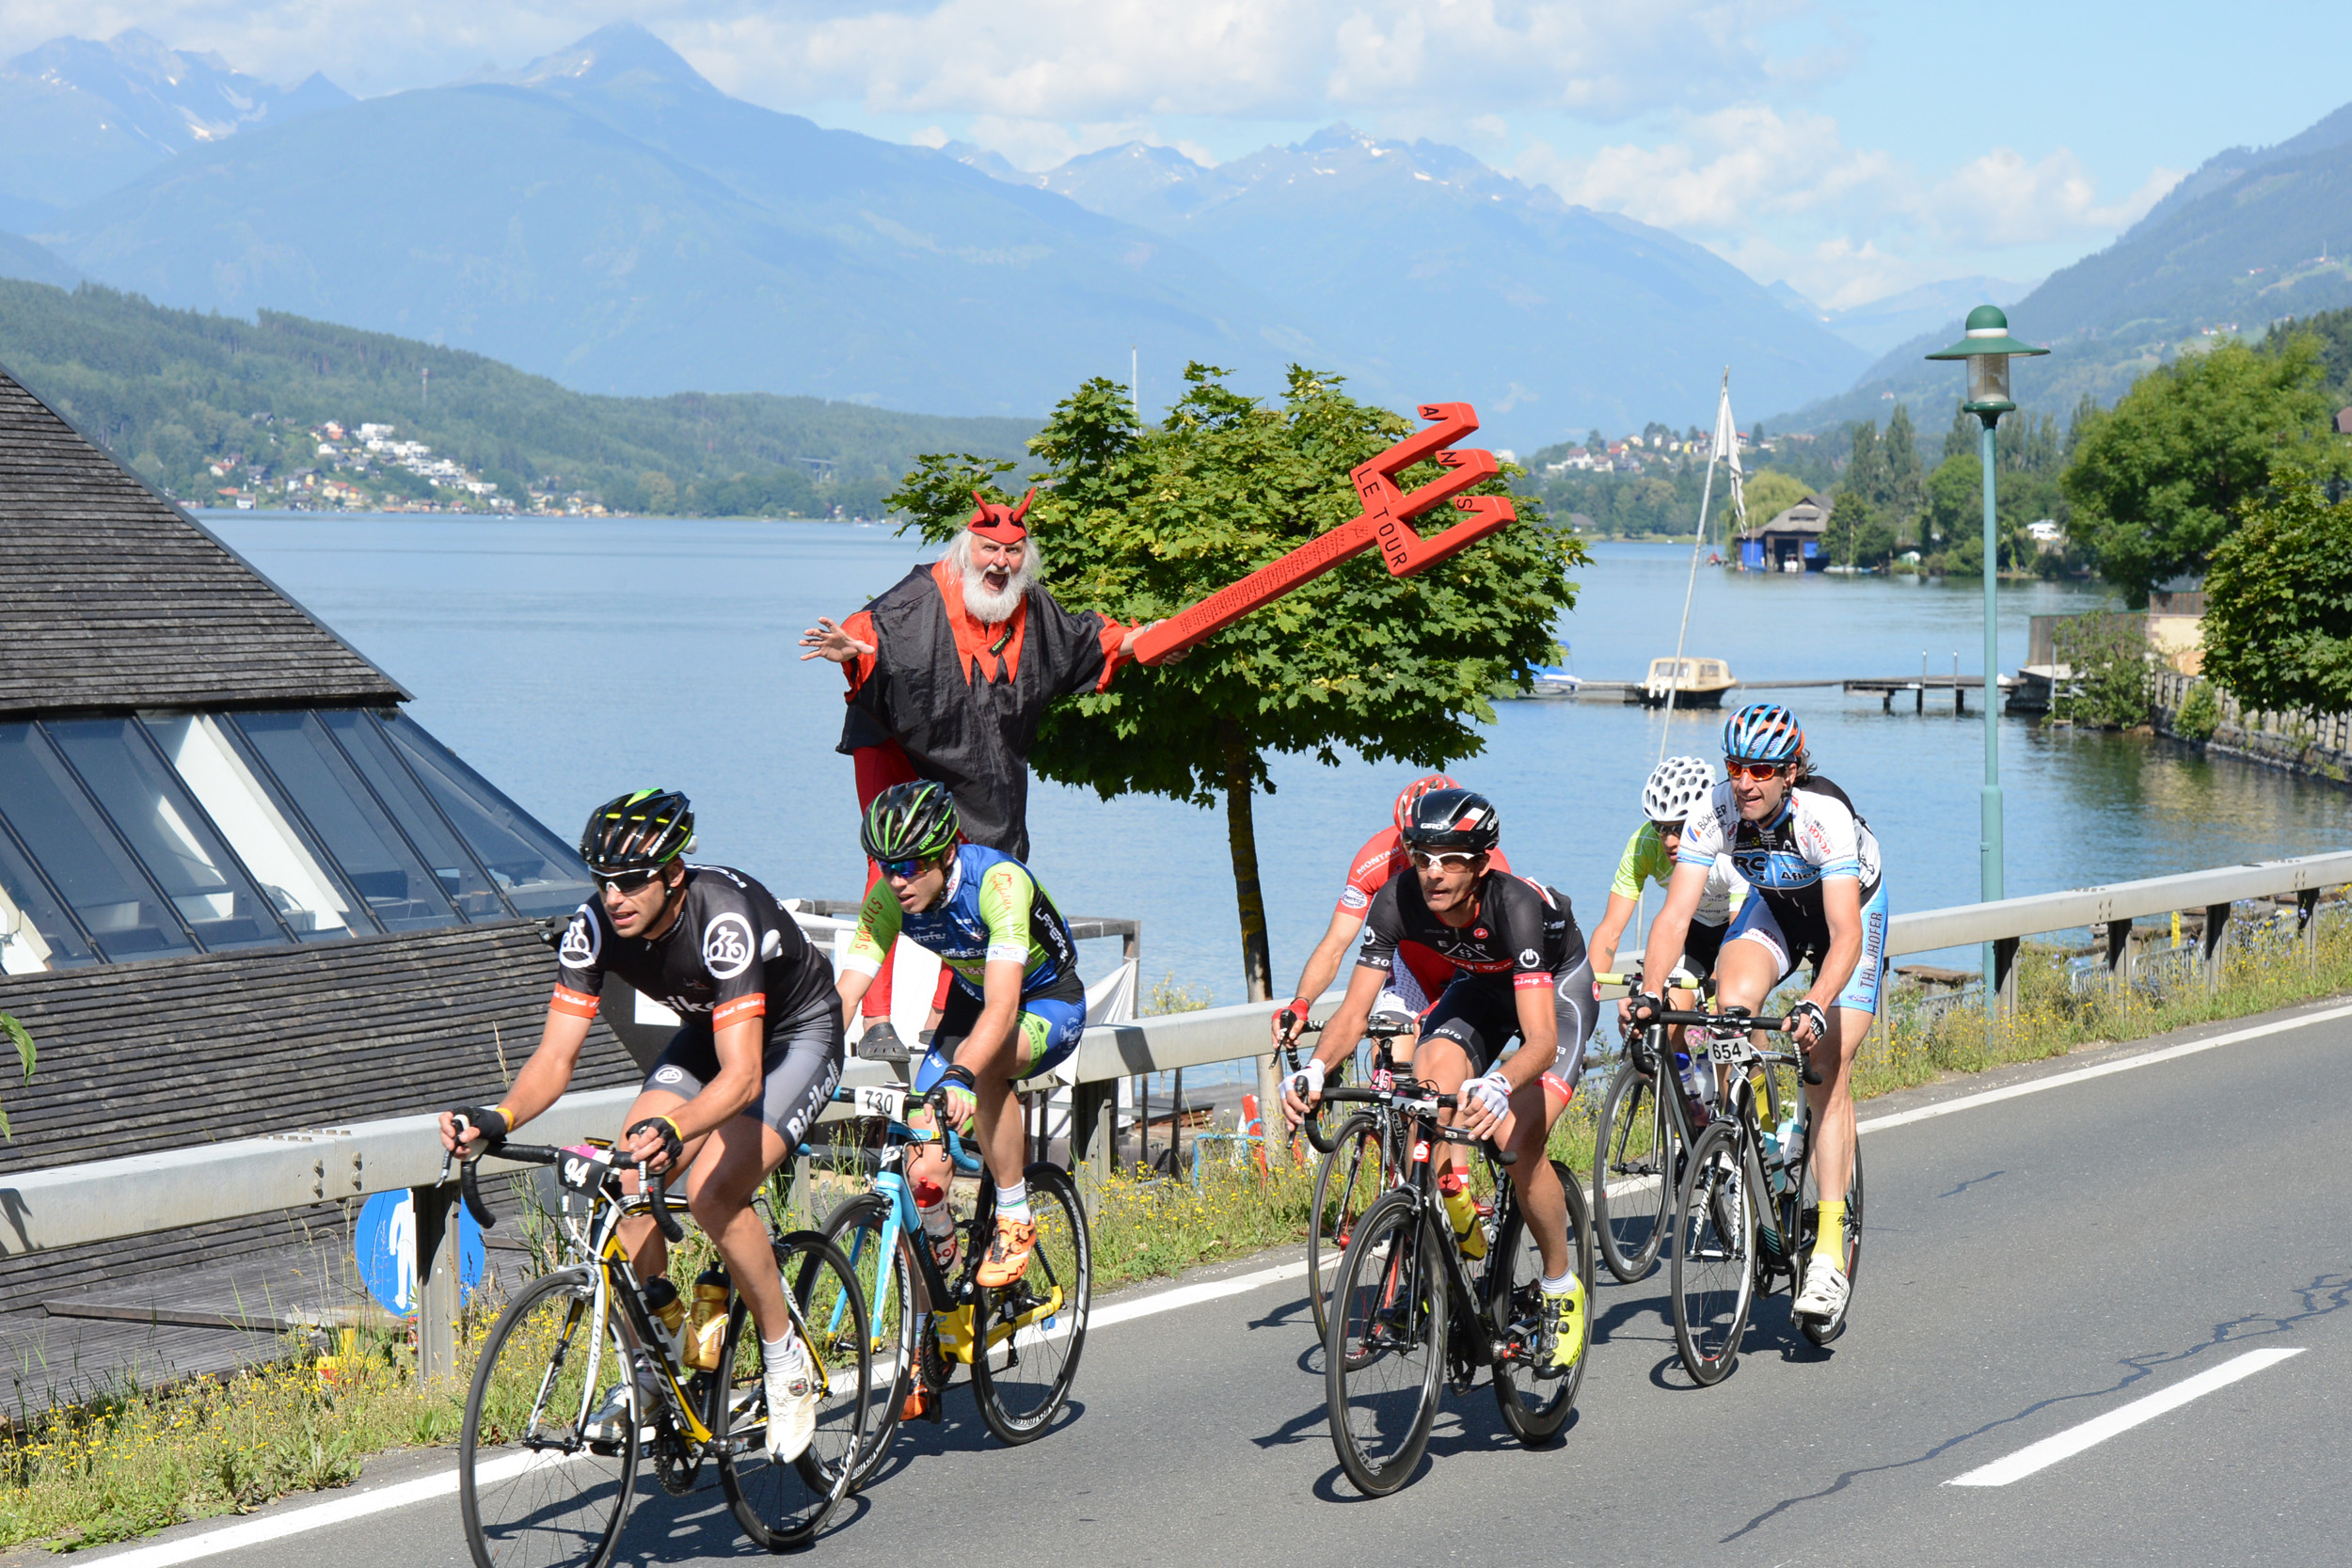 Mehr Sicherheit und mehr Zeit für den Genuss der herrlichen Nockberge-Landschaft rund um den Milstätter See soll der neue Modus bringen: bike & enjoy!